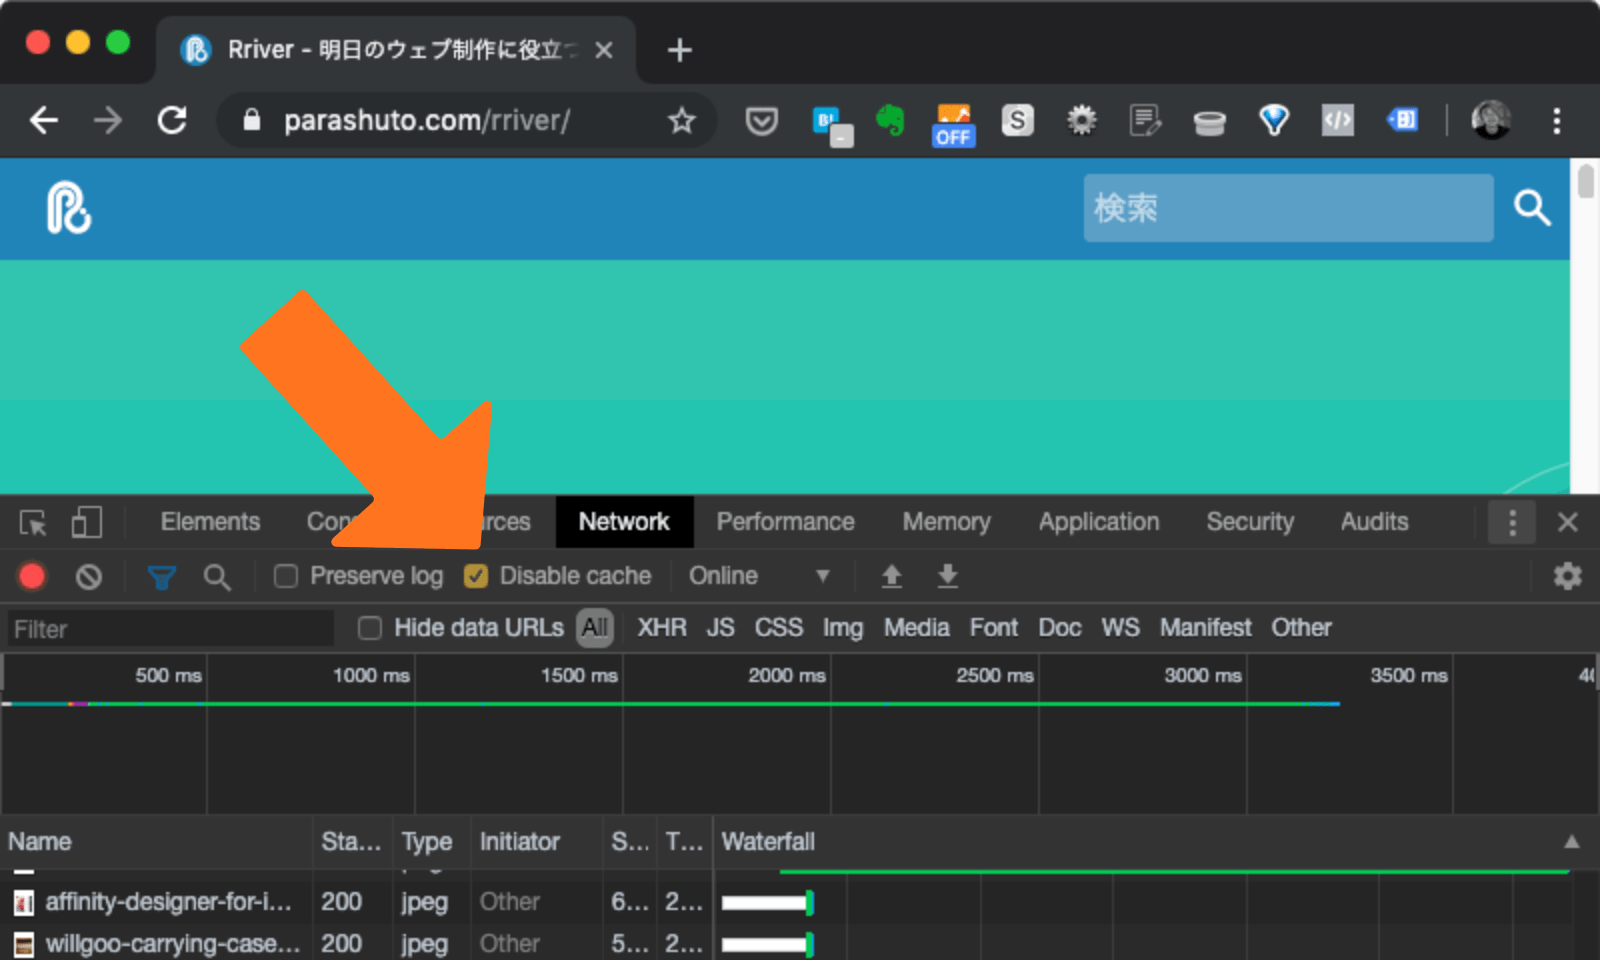 Chromeの開発ツールでNetworkタブを開いた状態の画面。オレンジの矢印でオプションの表示場所が指し示されている